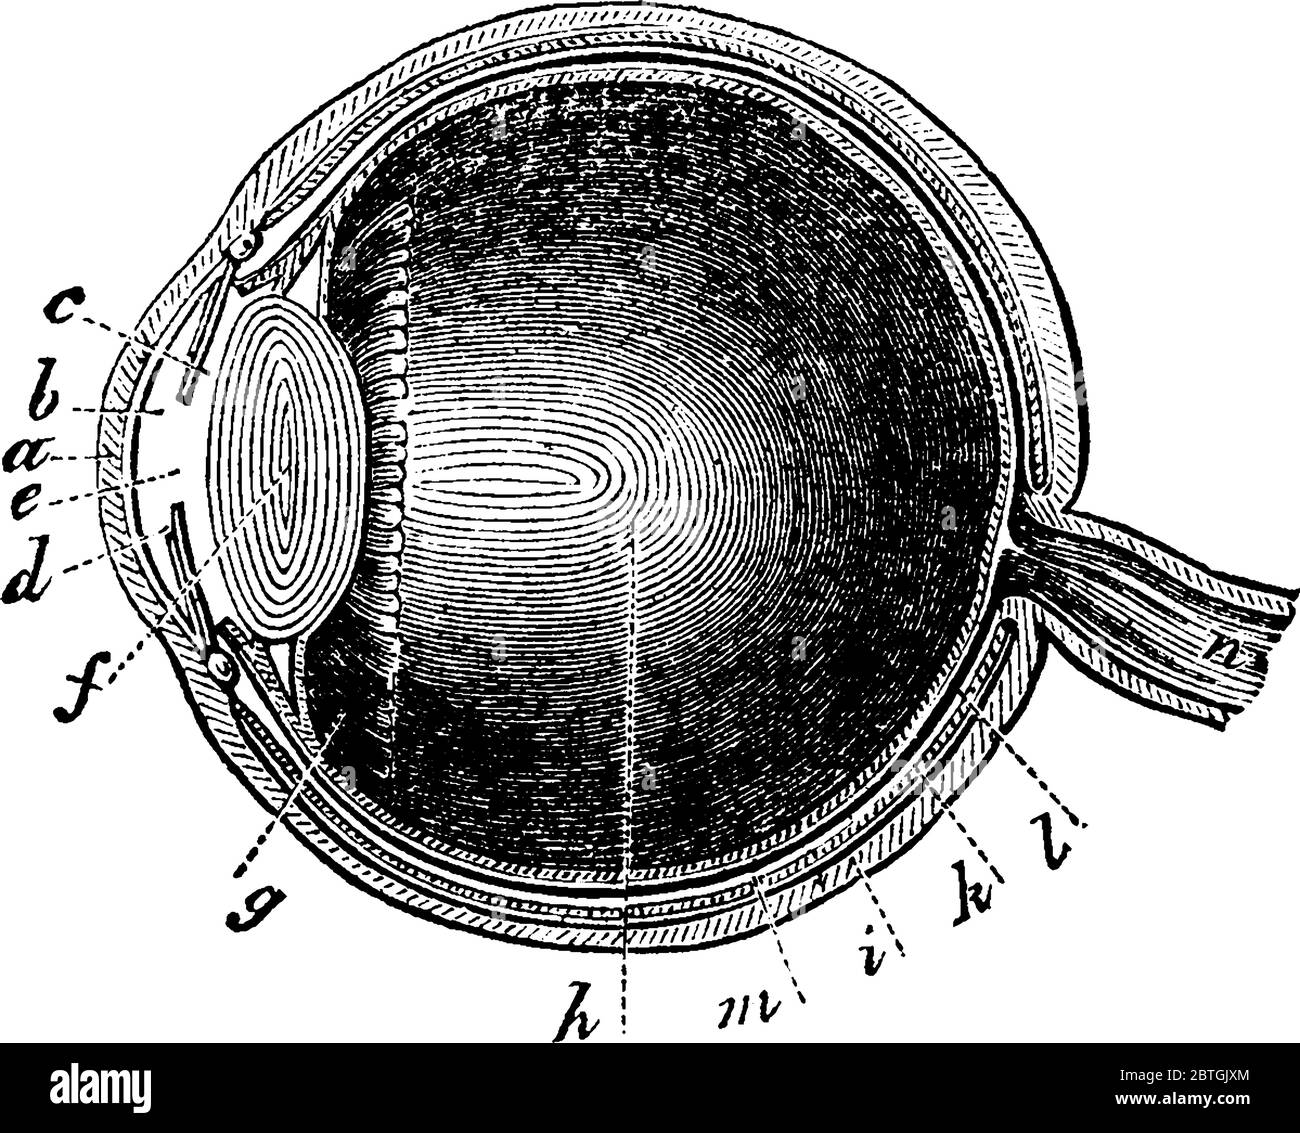 Eine typische Darstellung des menschlichen Auges mit den Teilen Pupille, Netzhaut, die eine Ausdehnung des Sehnervs, Aderhaut und Ziliarbänder ist, Stock Vektor